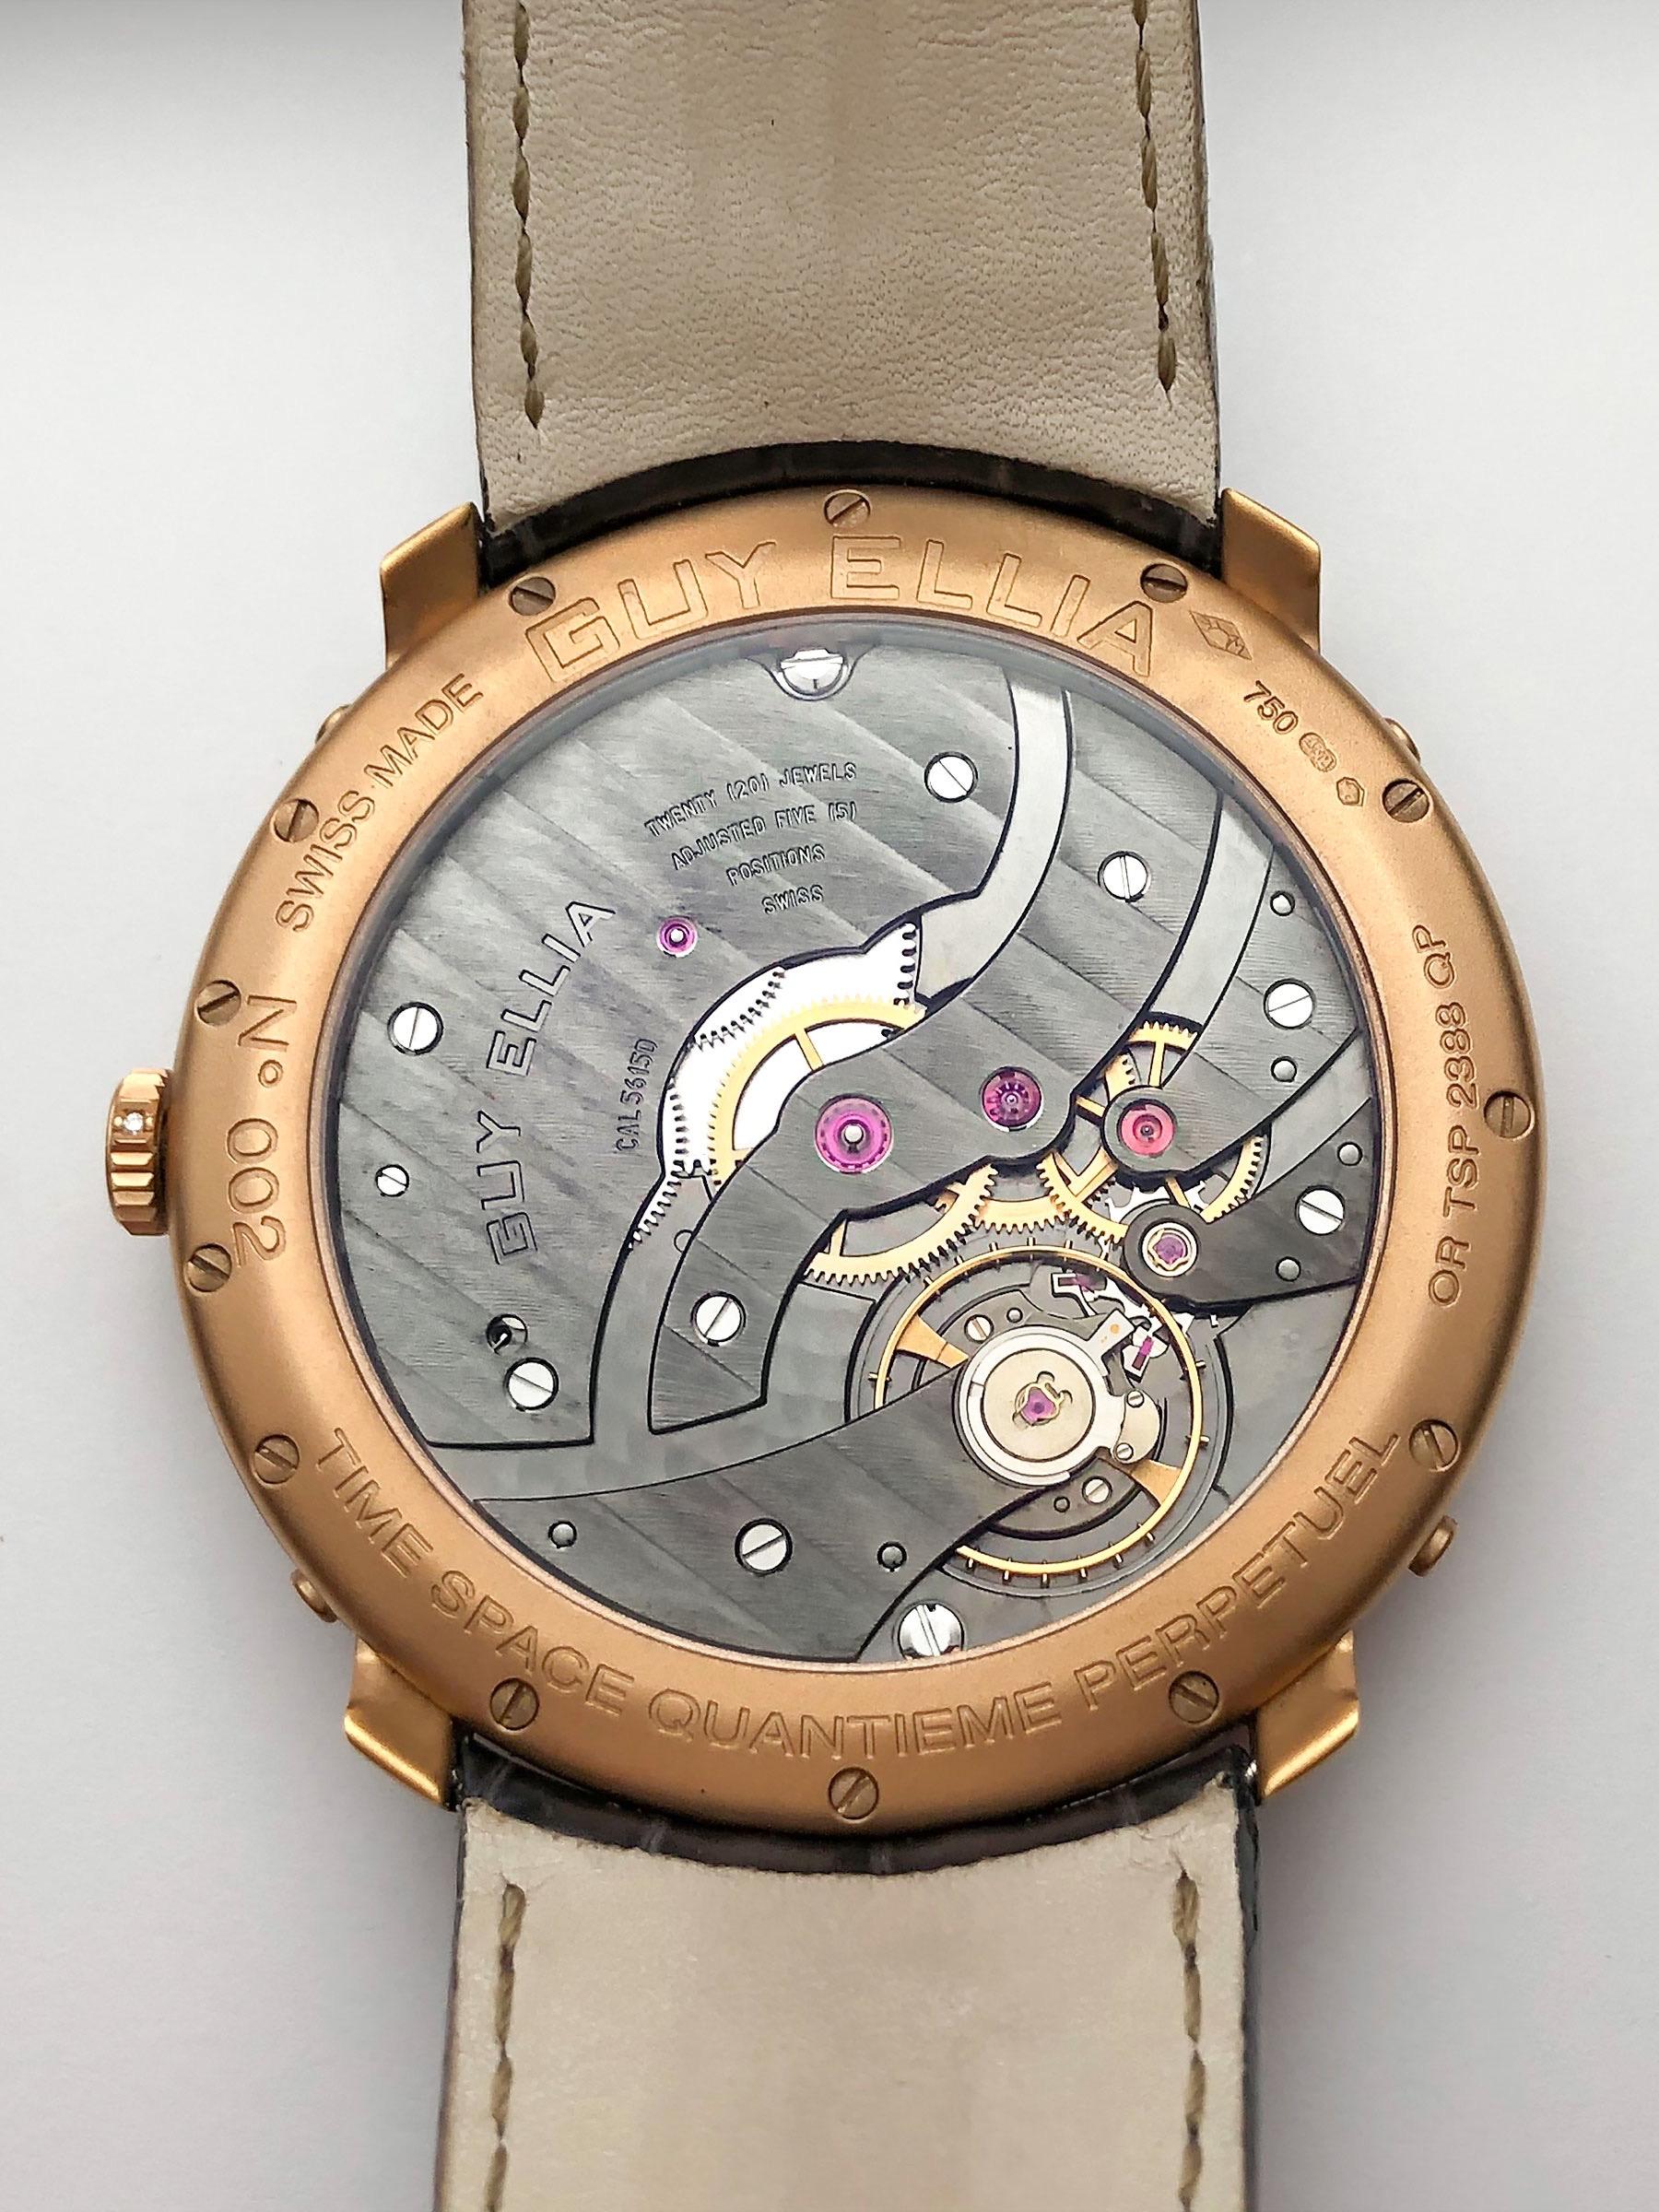 Reloj calendario perpetuo Guy Ellia Time Space Quantieme de oro de 18 quilates, nº 2/200 Moderno en venta